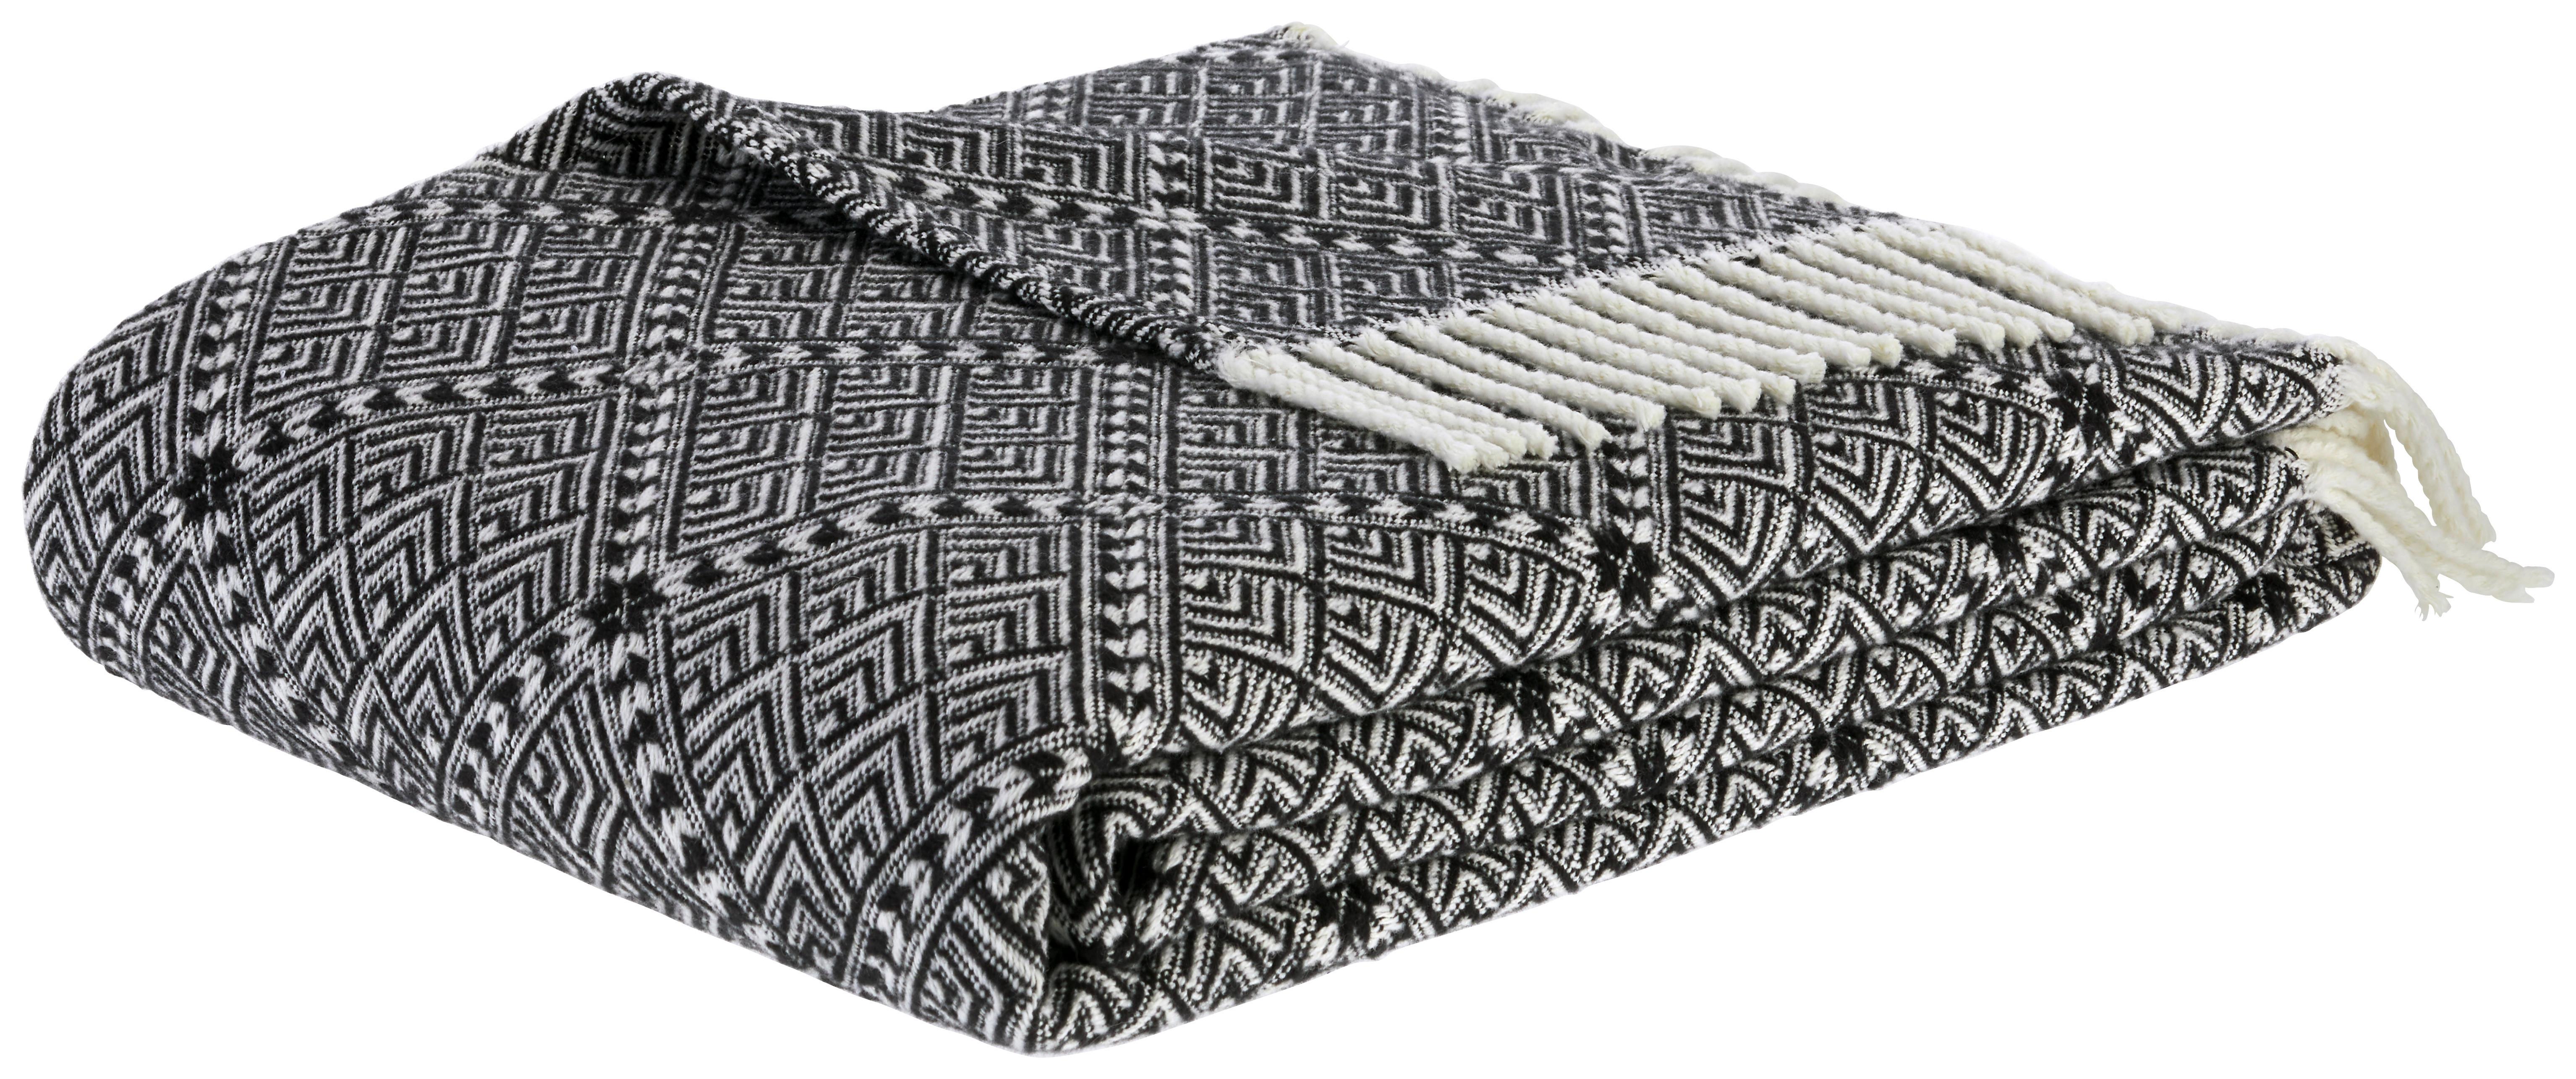 Pătură Samira - culoare natur/negru, Lifestyle (130/170cm) - Modern Living